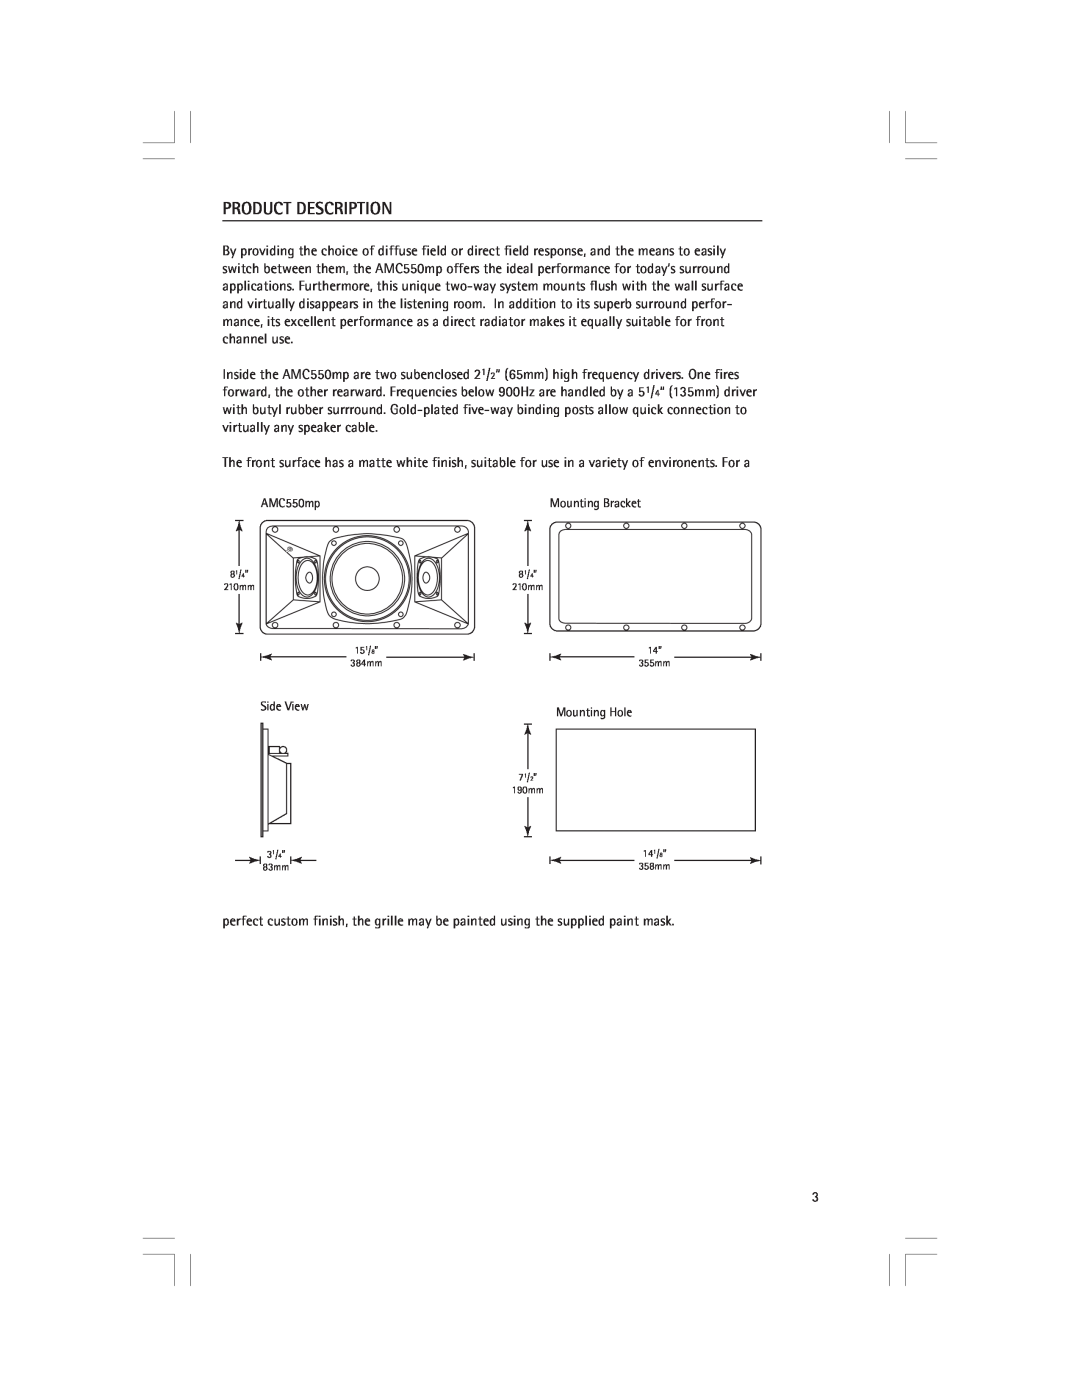 Snell Acoustics AMC550mp owner manual Product Description 